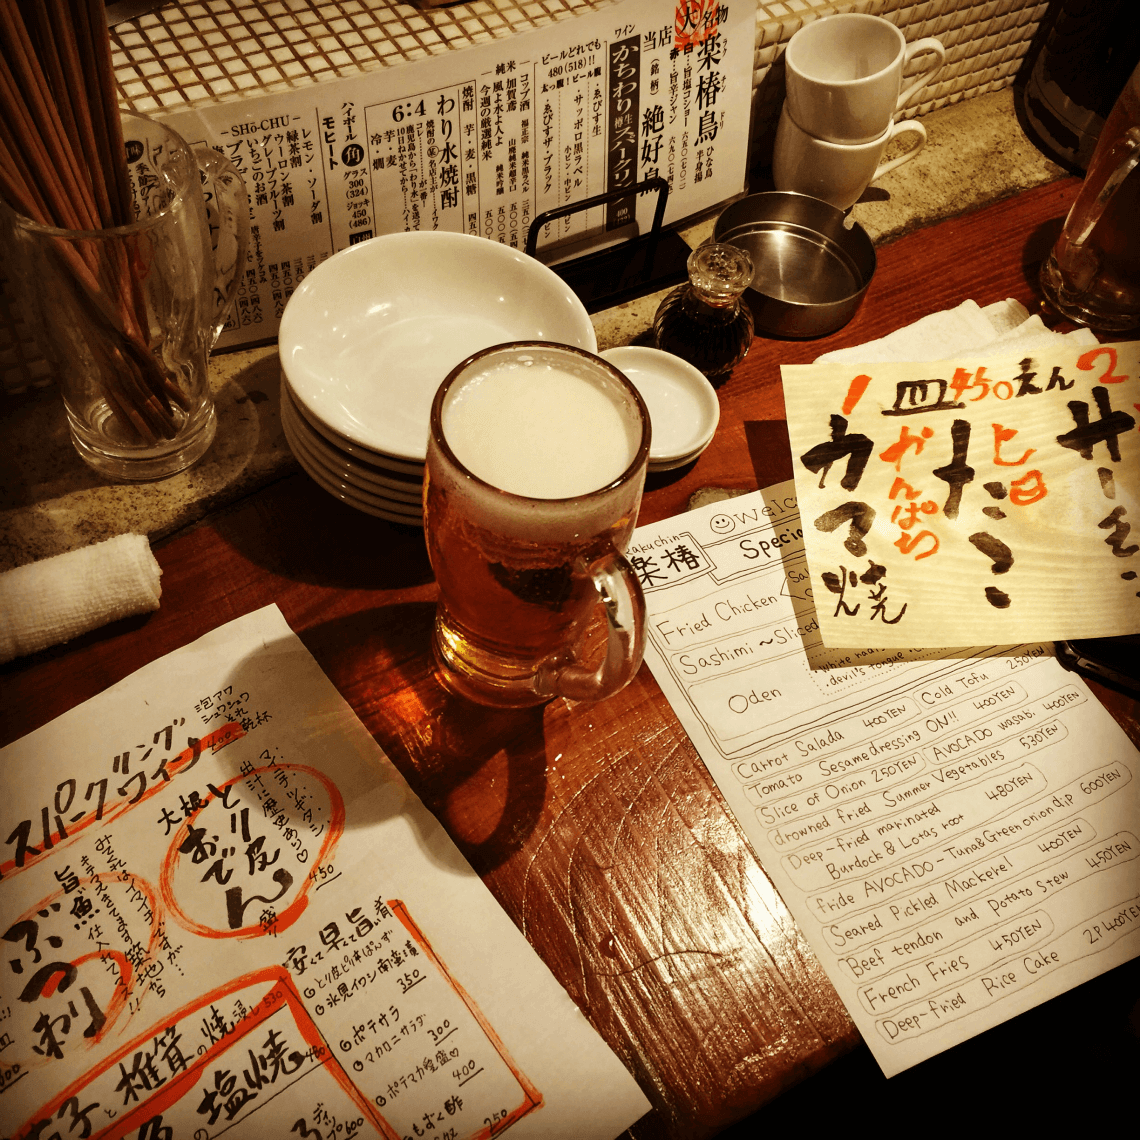 东京涩谷的居酒屋。这是我们推荐的在日本必做的事情之一